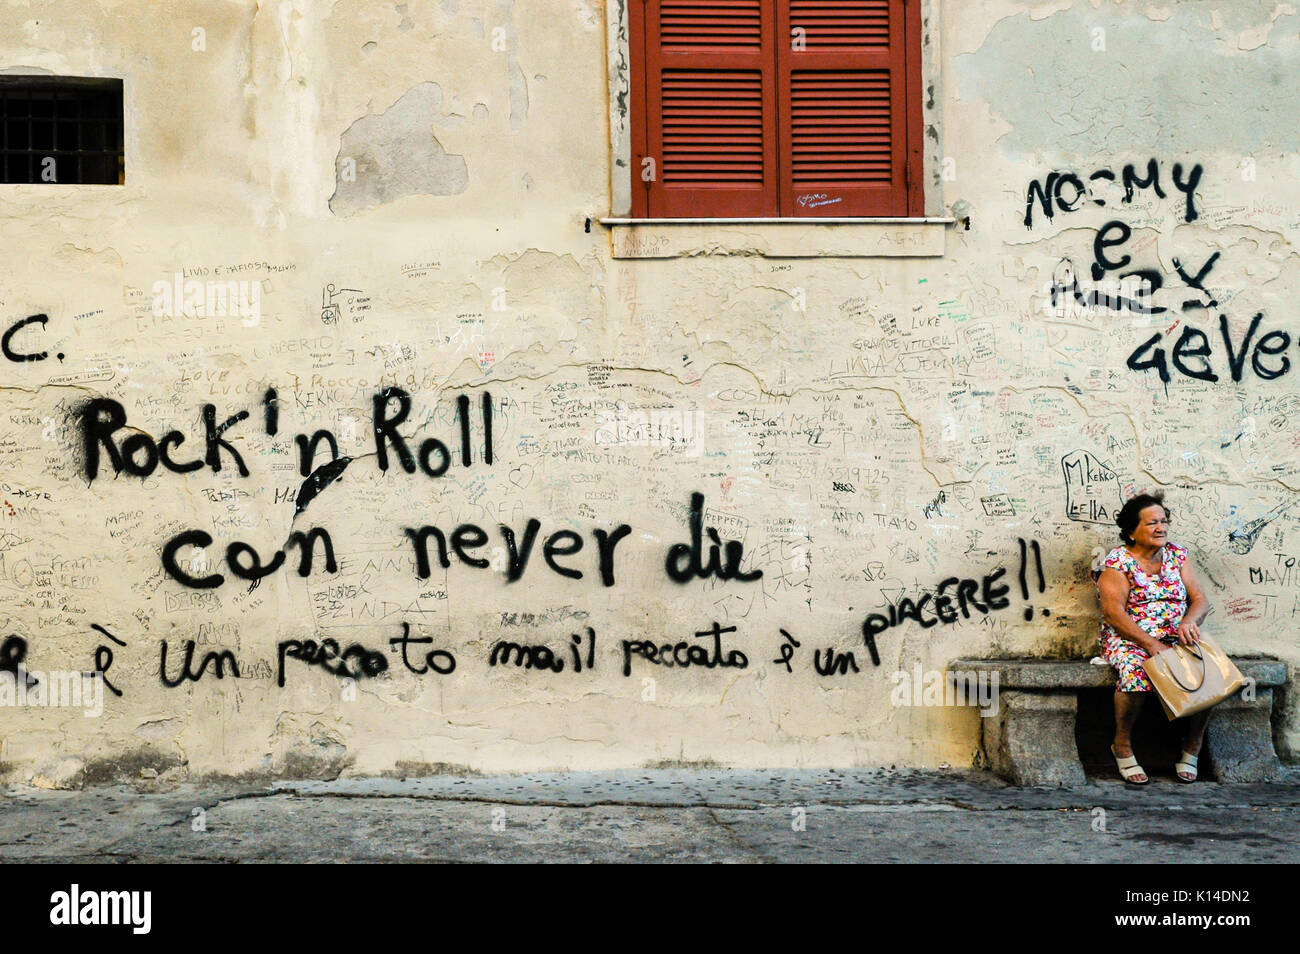 TROPEA, Calabre, Italie, avril 2014 : des graffitis dans une ancienne ville italienne de Calabre. Vieille Femme assise à côté d'un mur avec les mots "Rock'n roll peut nev Banque D'Images